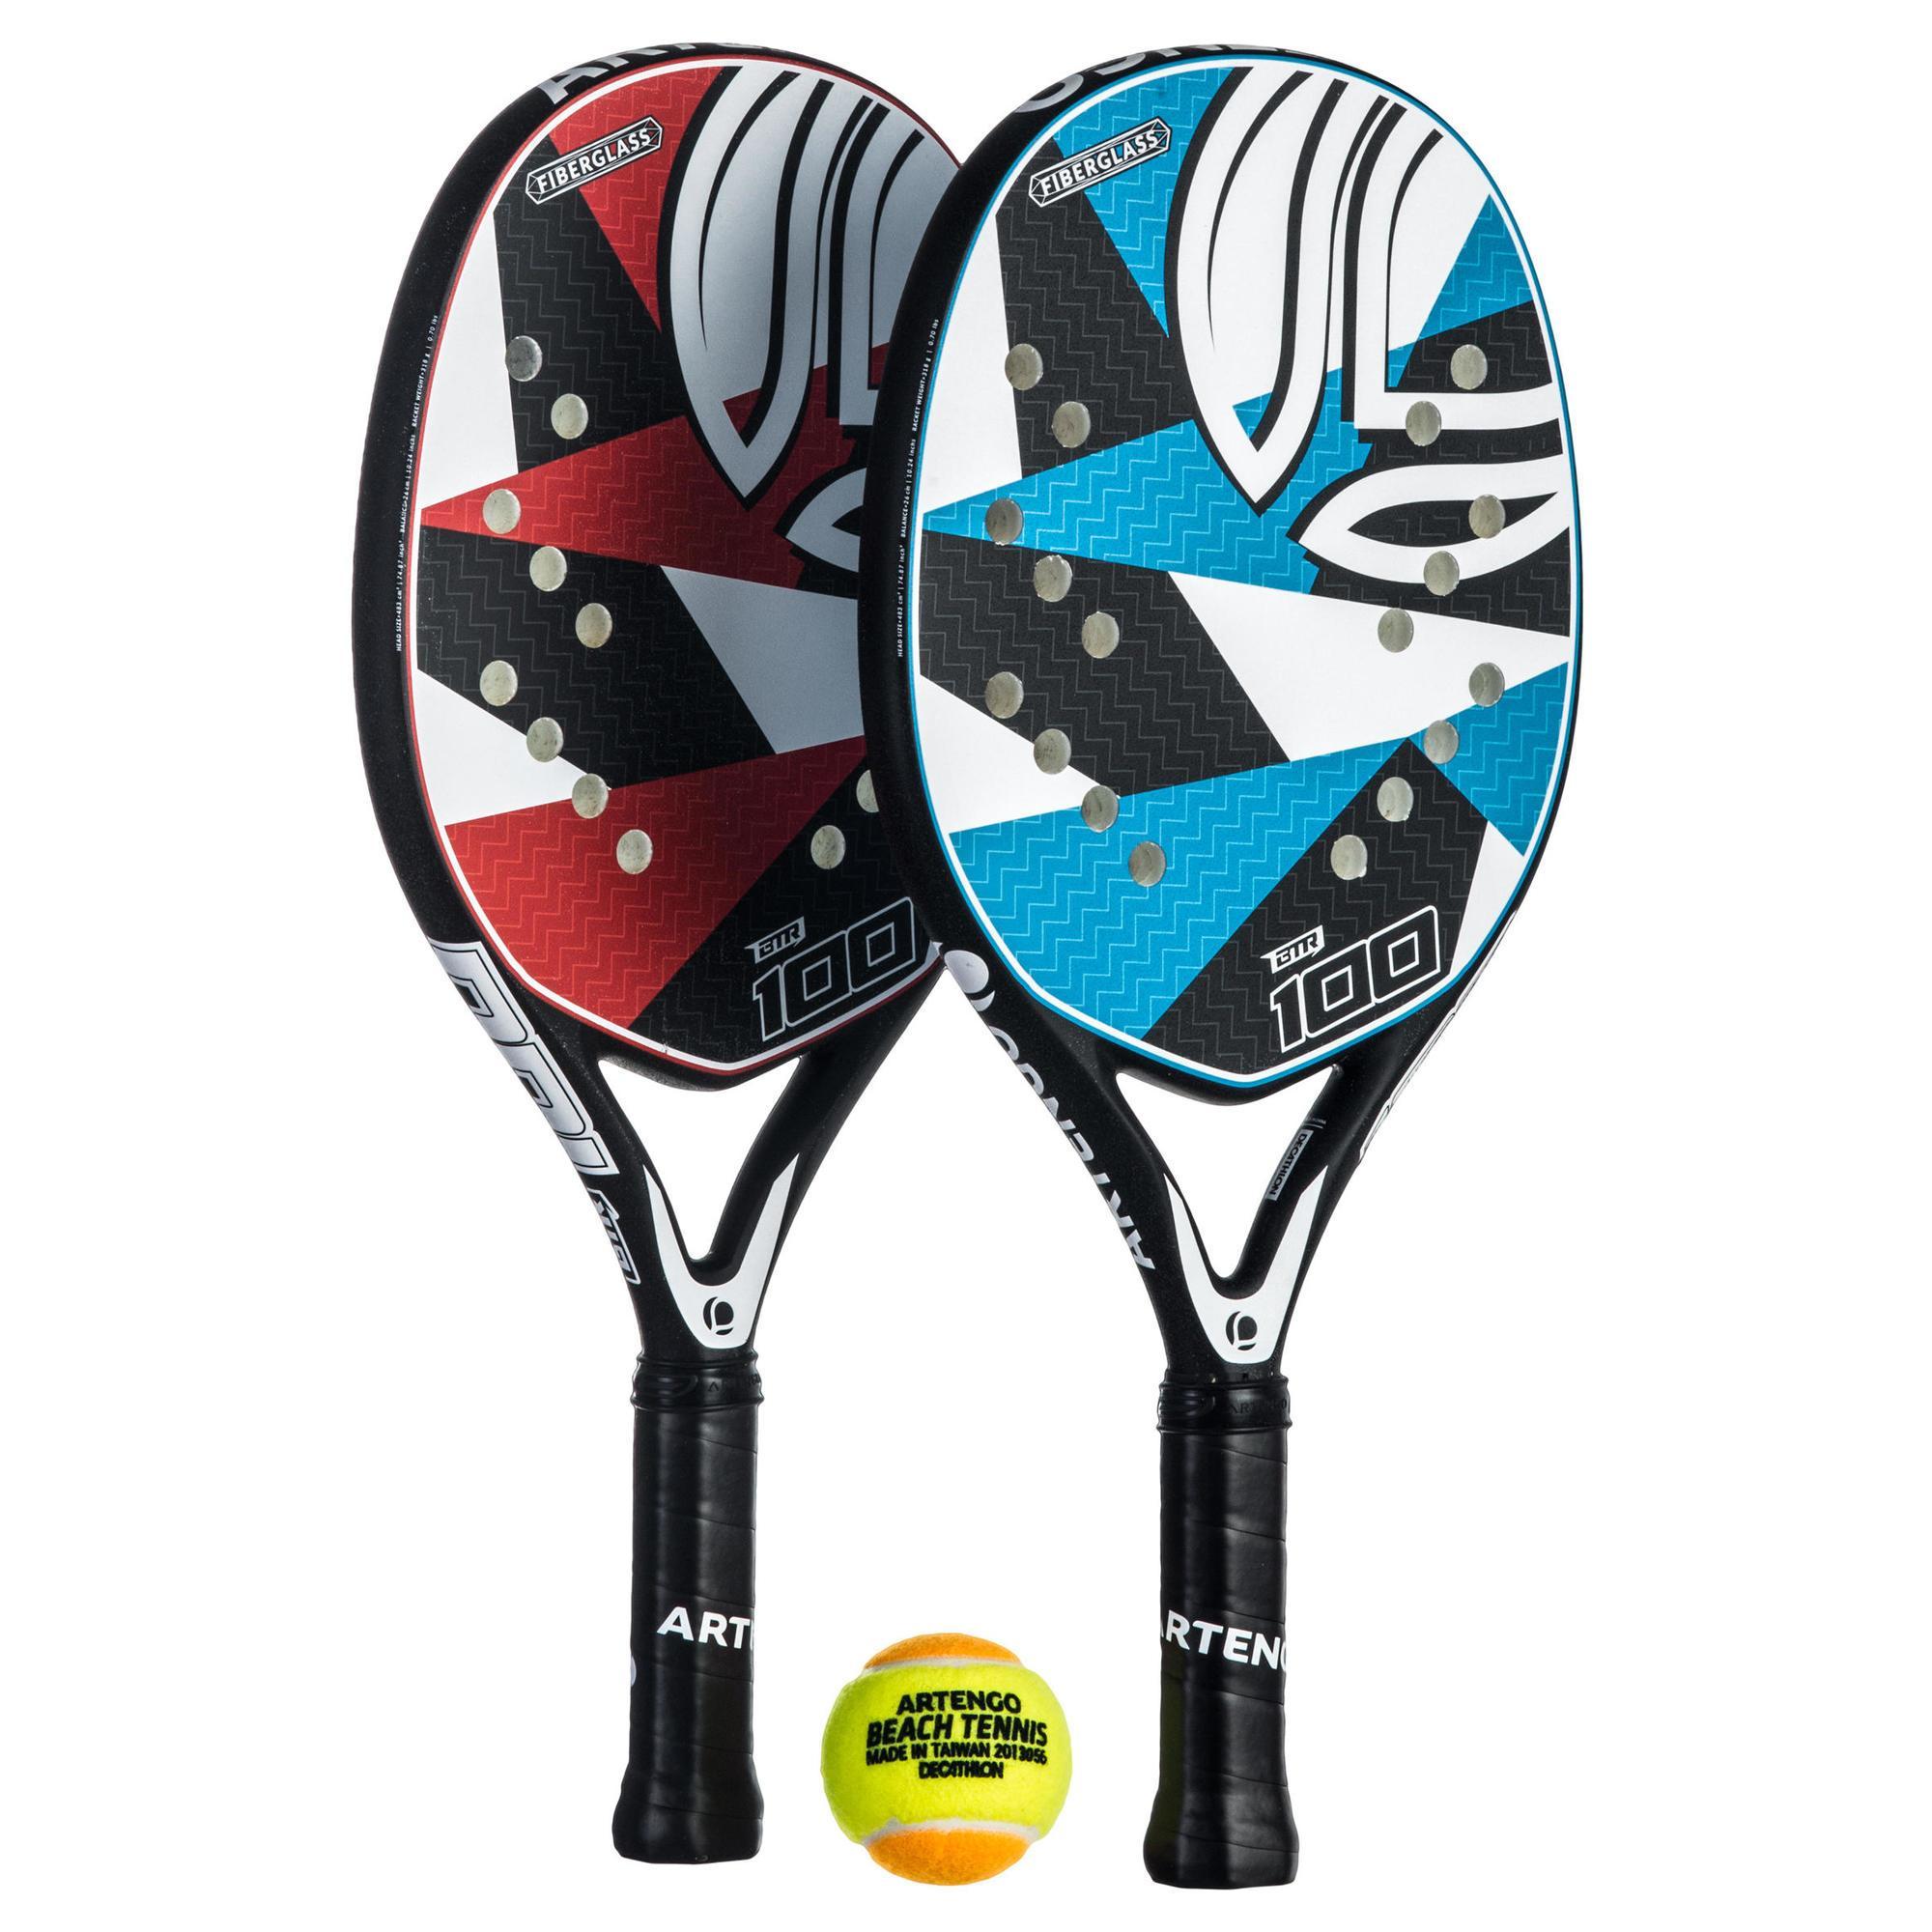 BTR 100 Beach Tennis Racket Set ARTENGO 